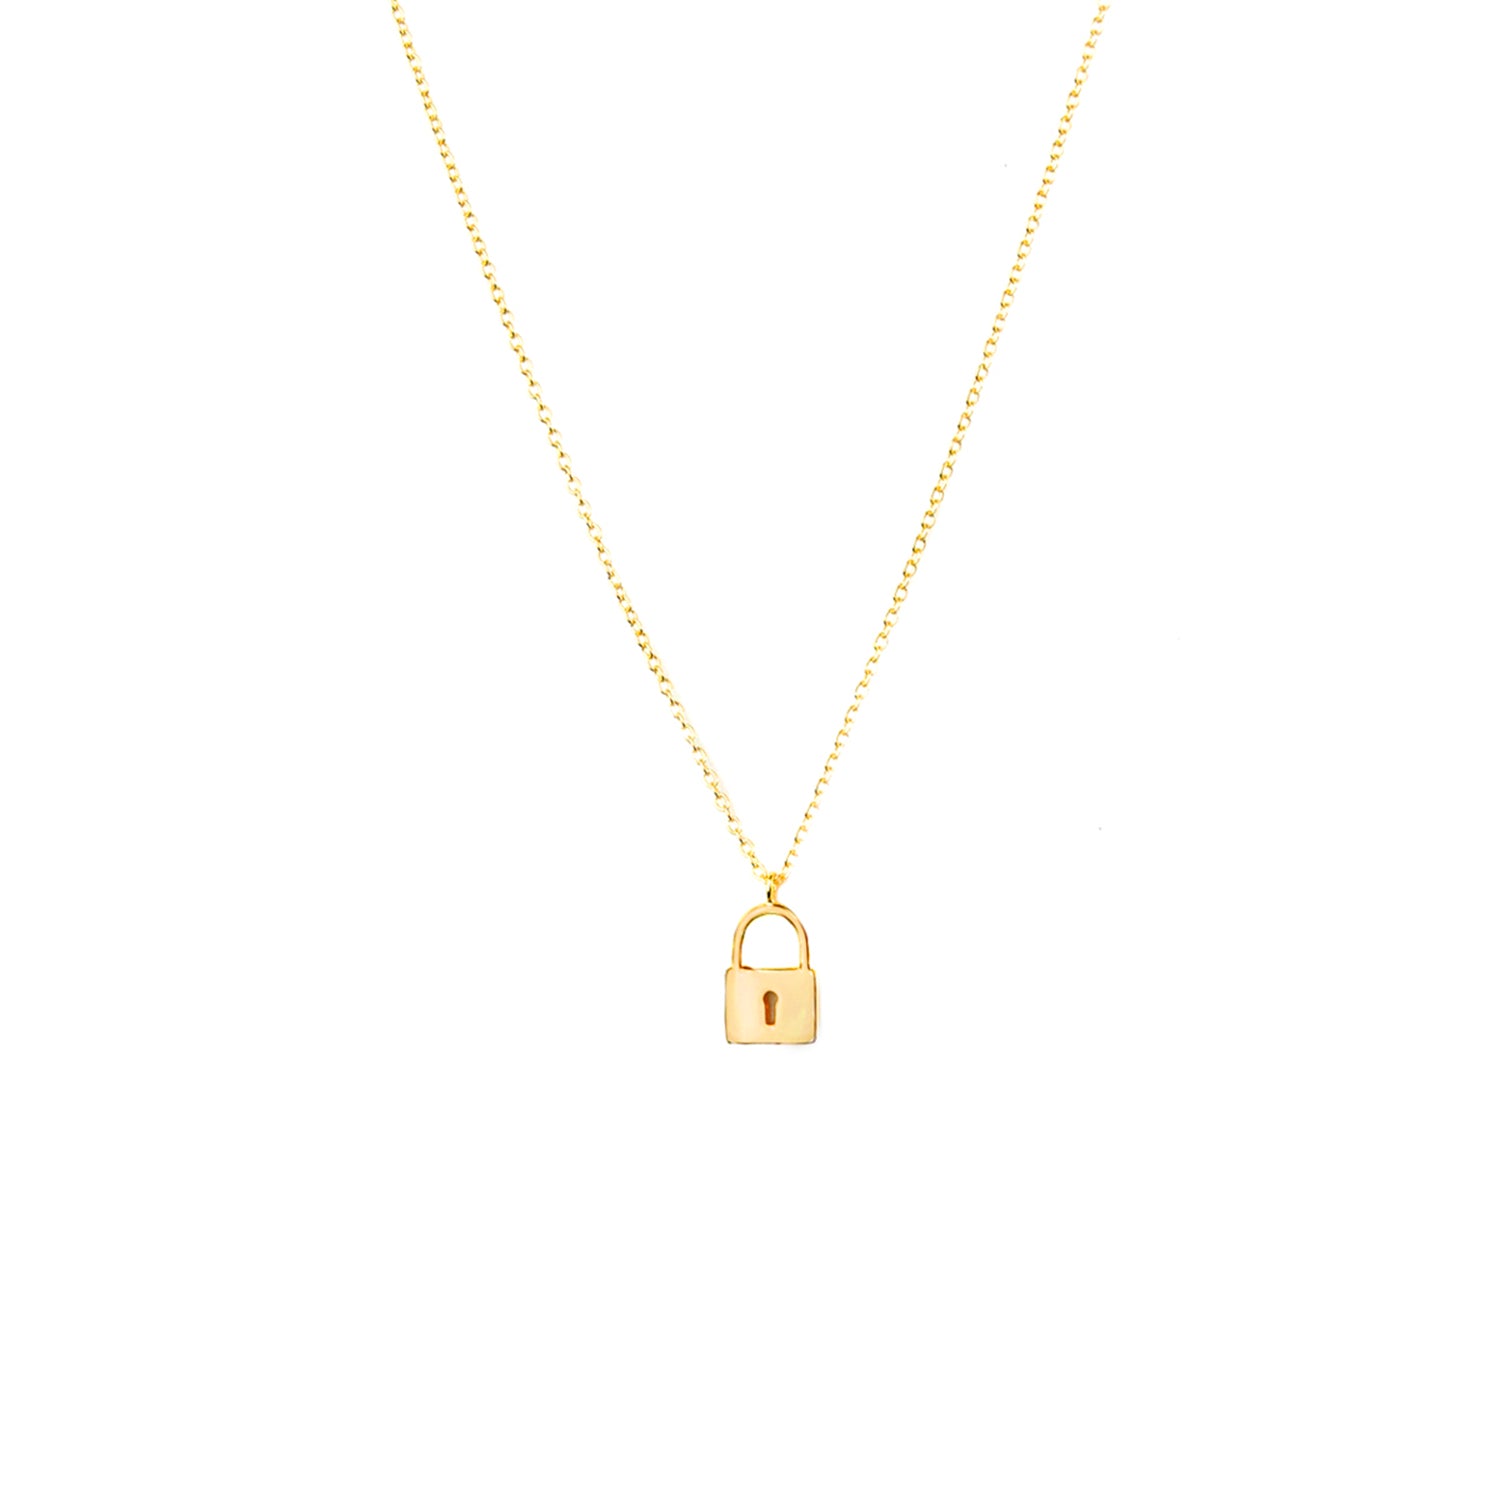 key ring/clasp multi chain necklace – Marlyn Schiff, LLC